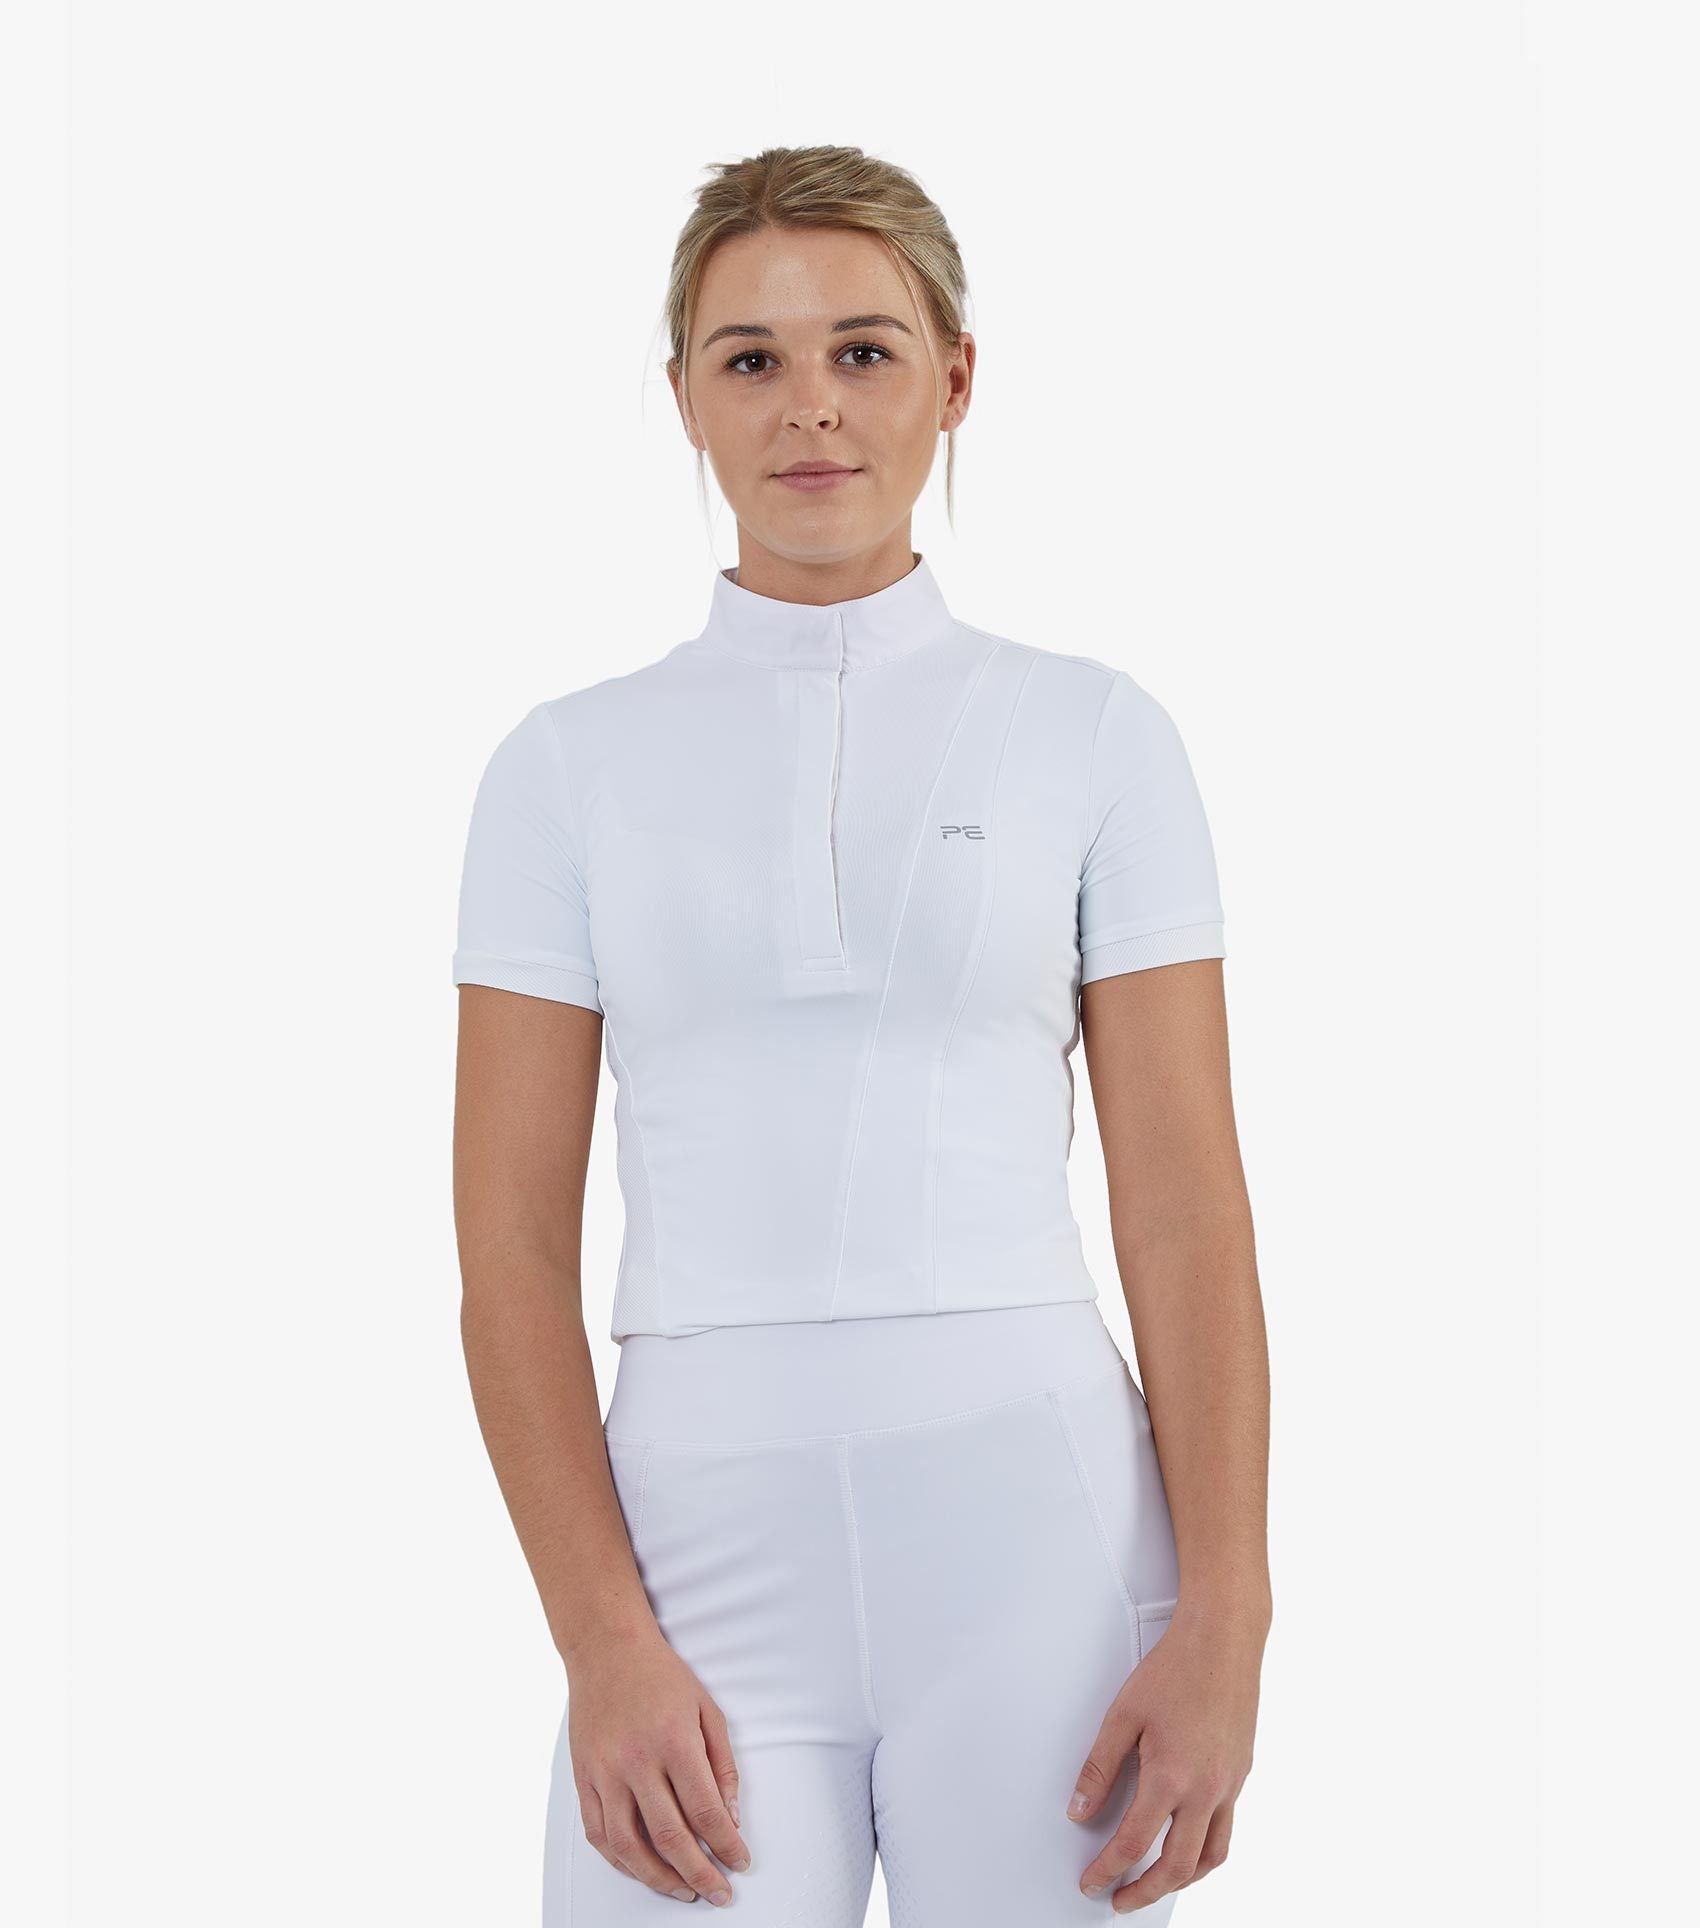 Description:Bellisa Ladies Show Shirt_Color:White_Position:1